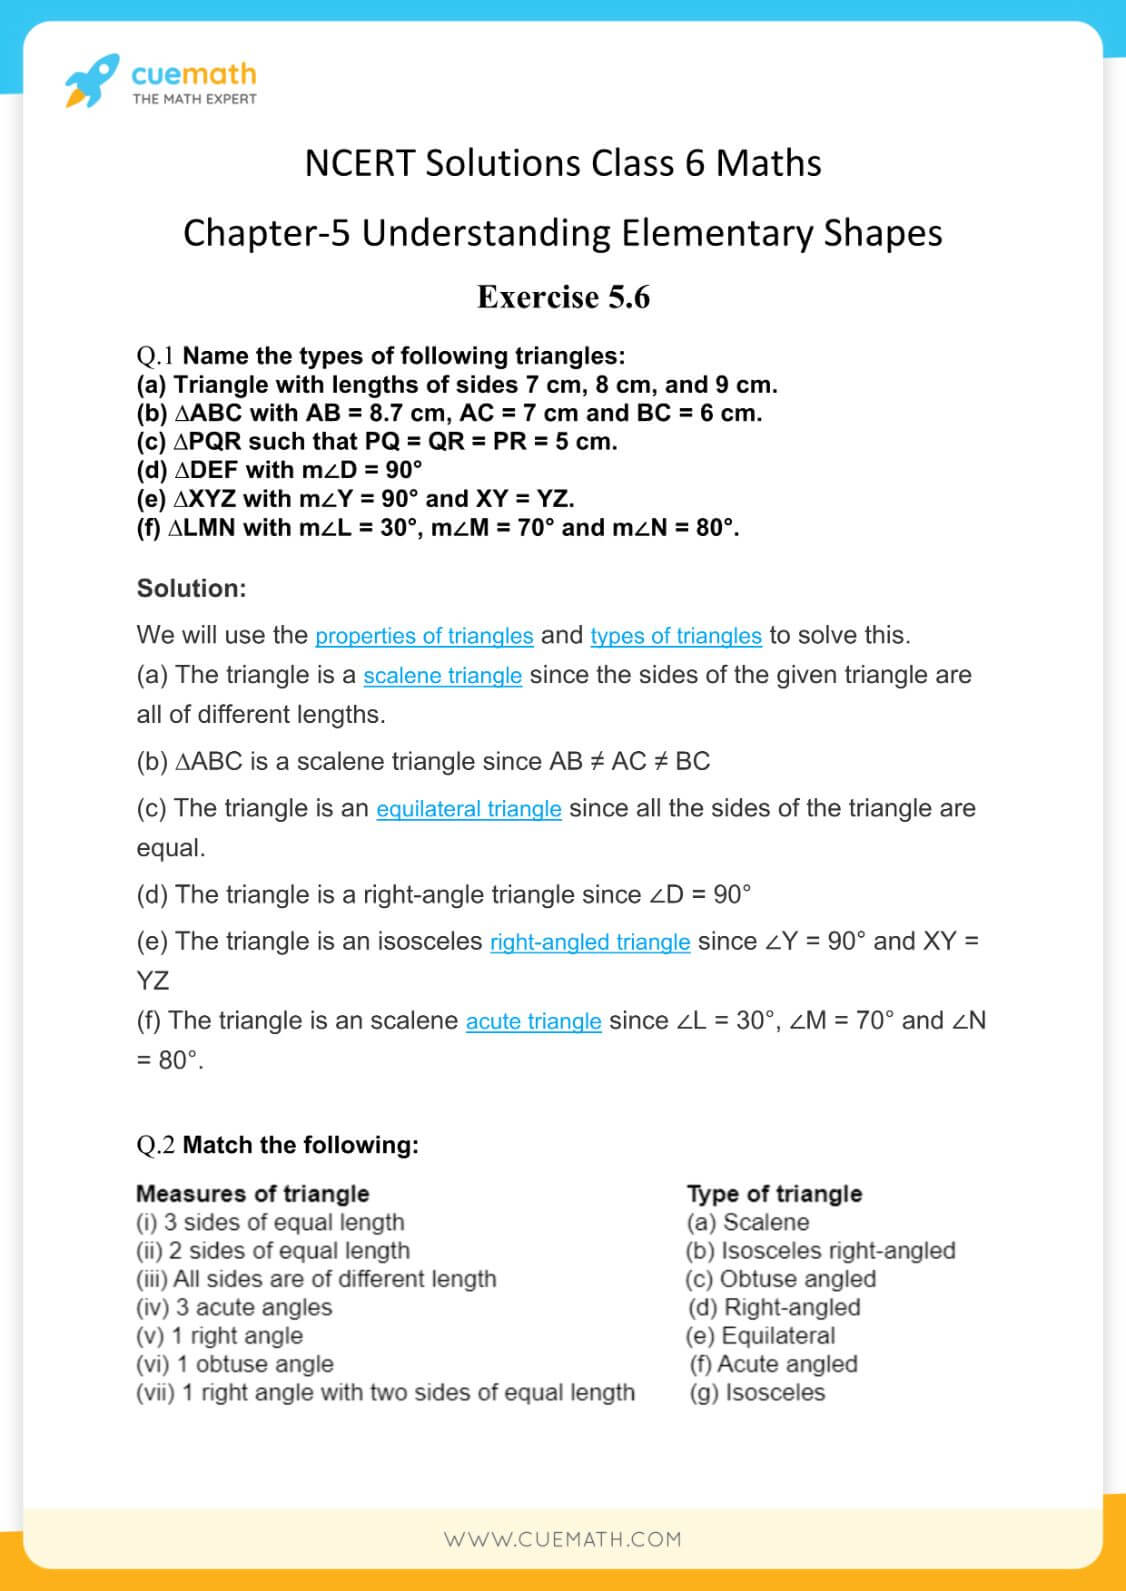 NCERT Solutions Class 6 Maths Chapter 5-24